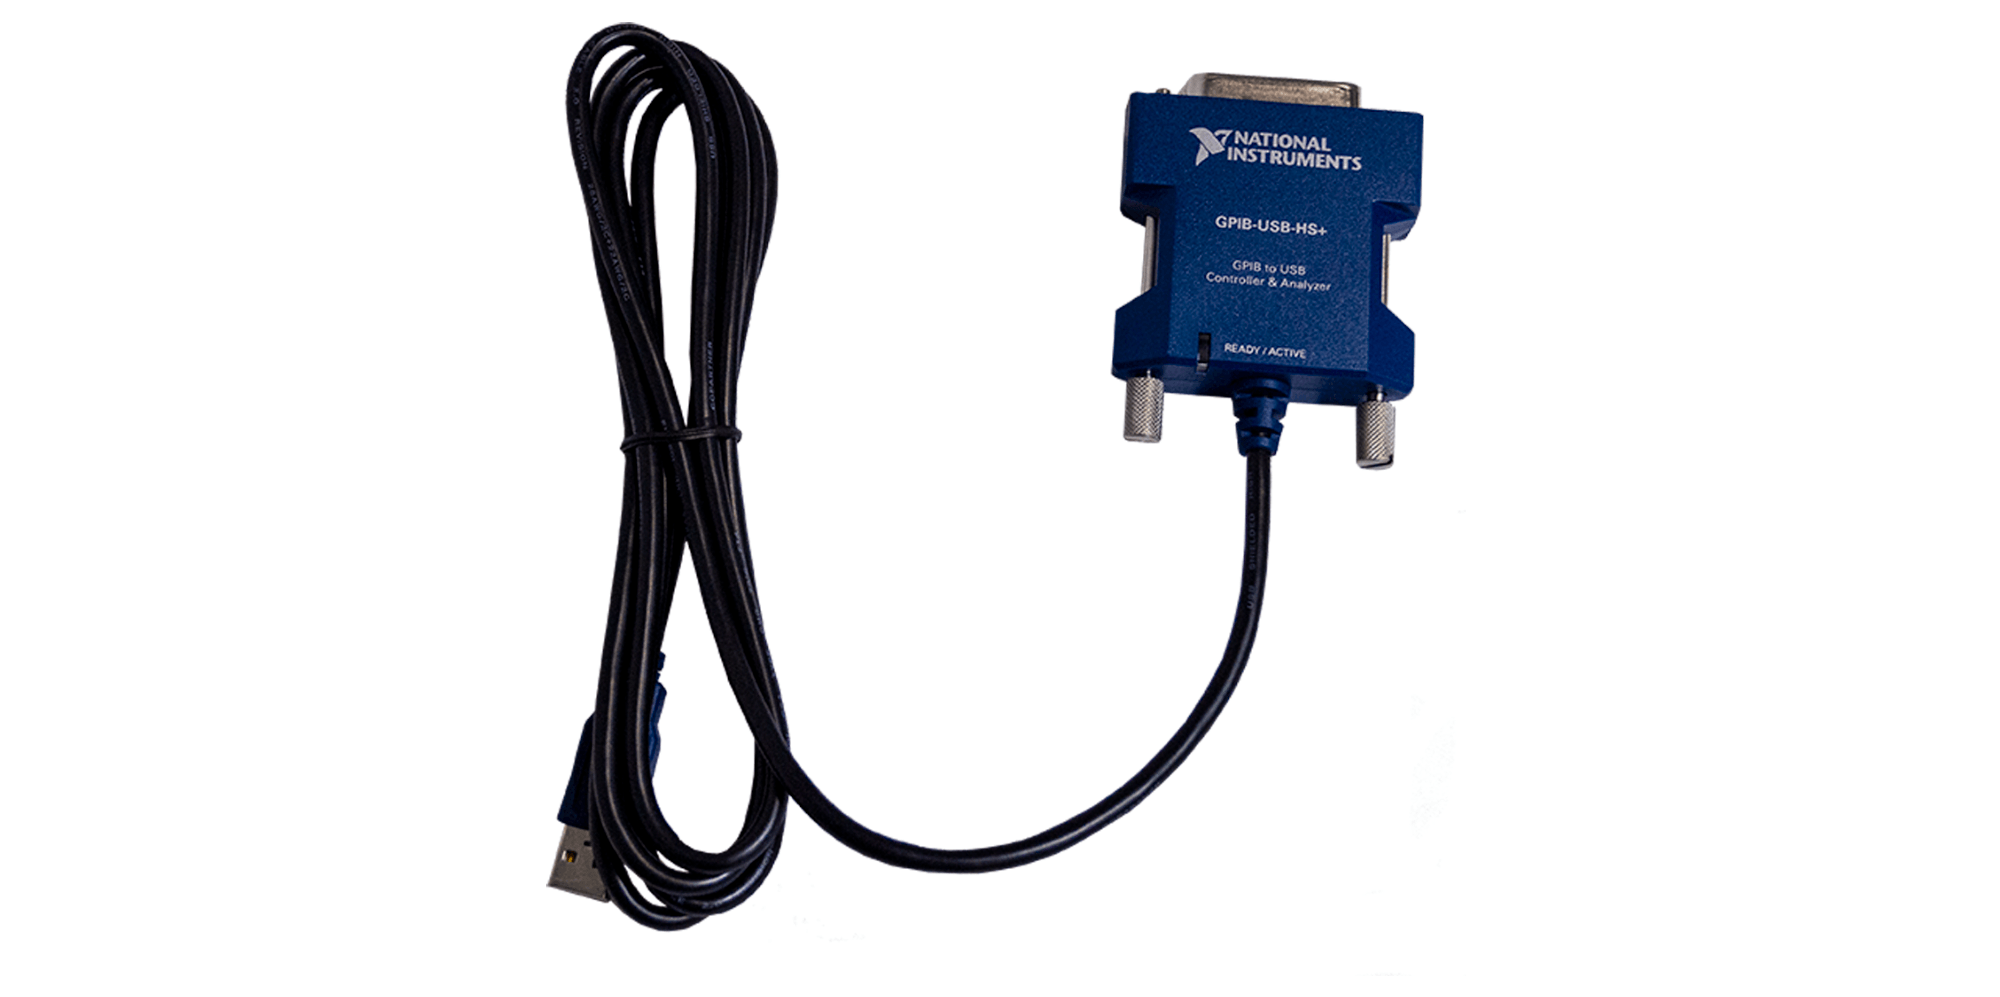 品質一番の NI USB-GPIBコントローラ GPIB-USB-HS PC周辺機器